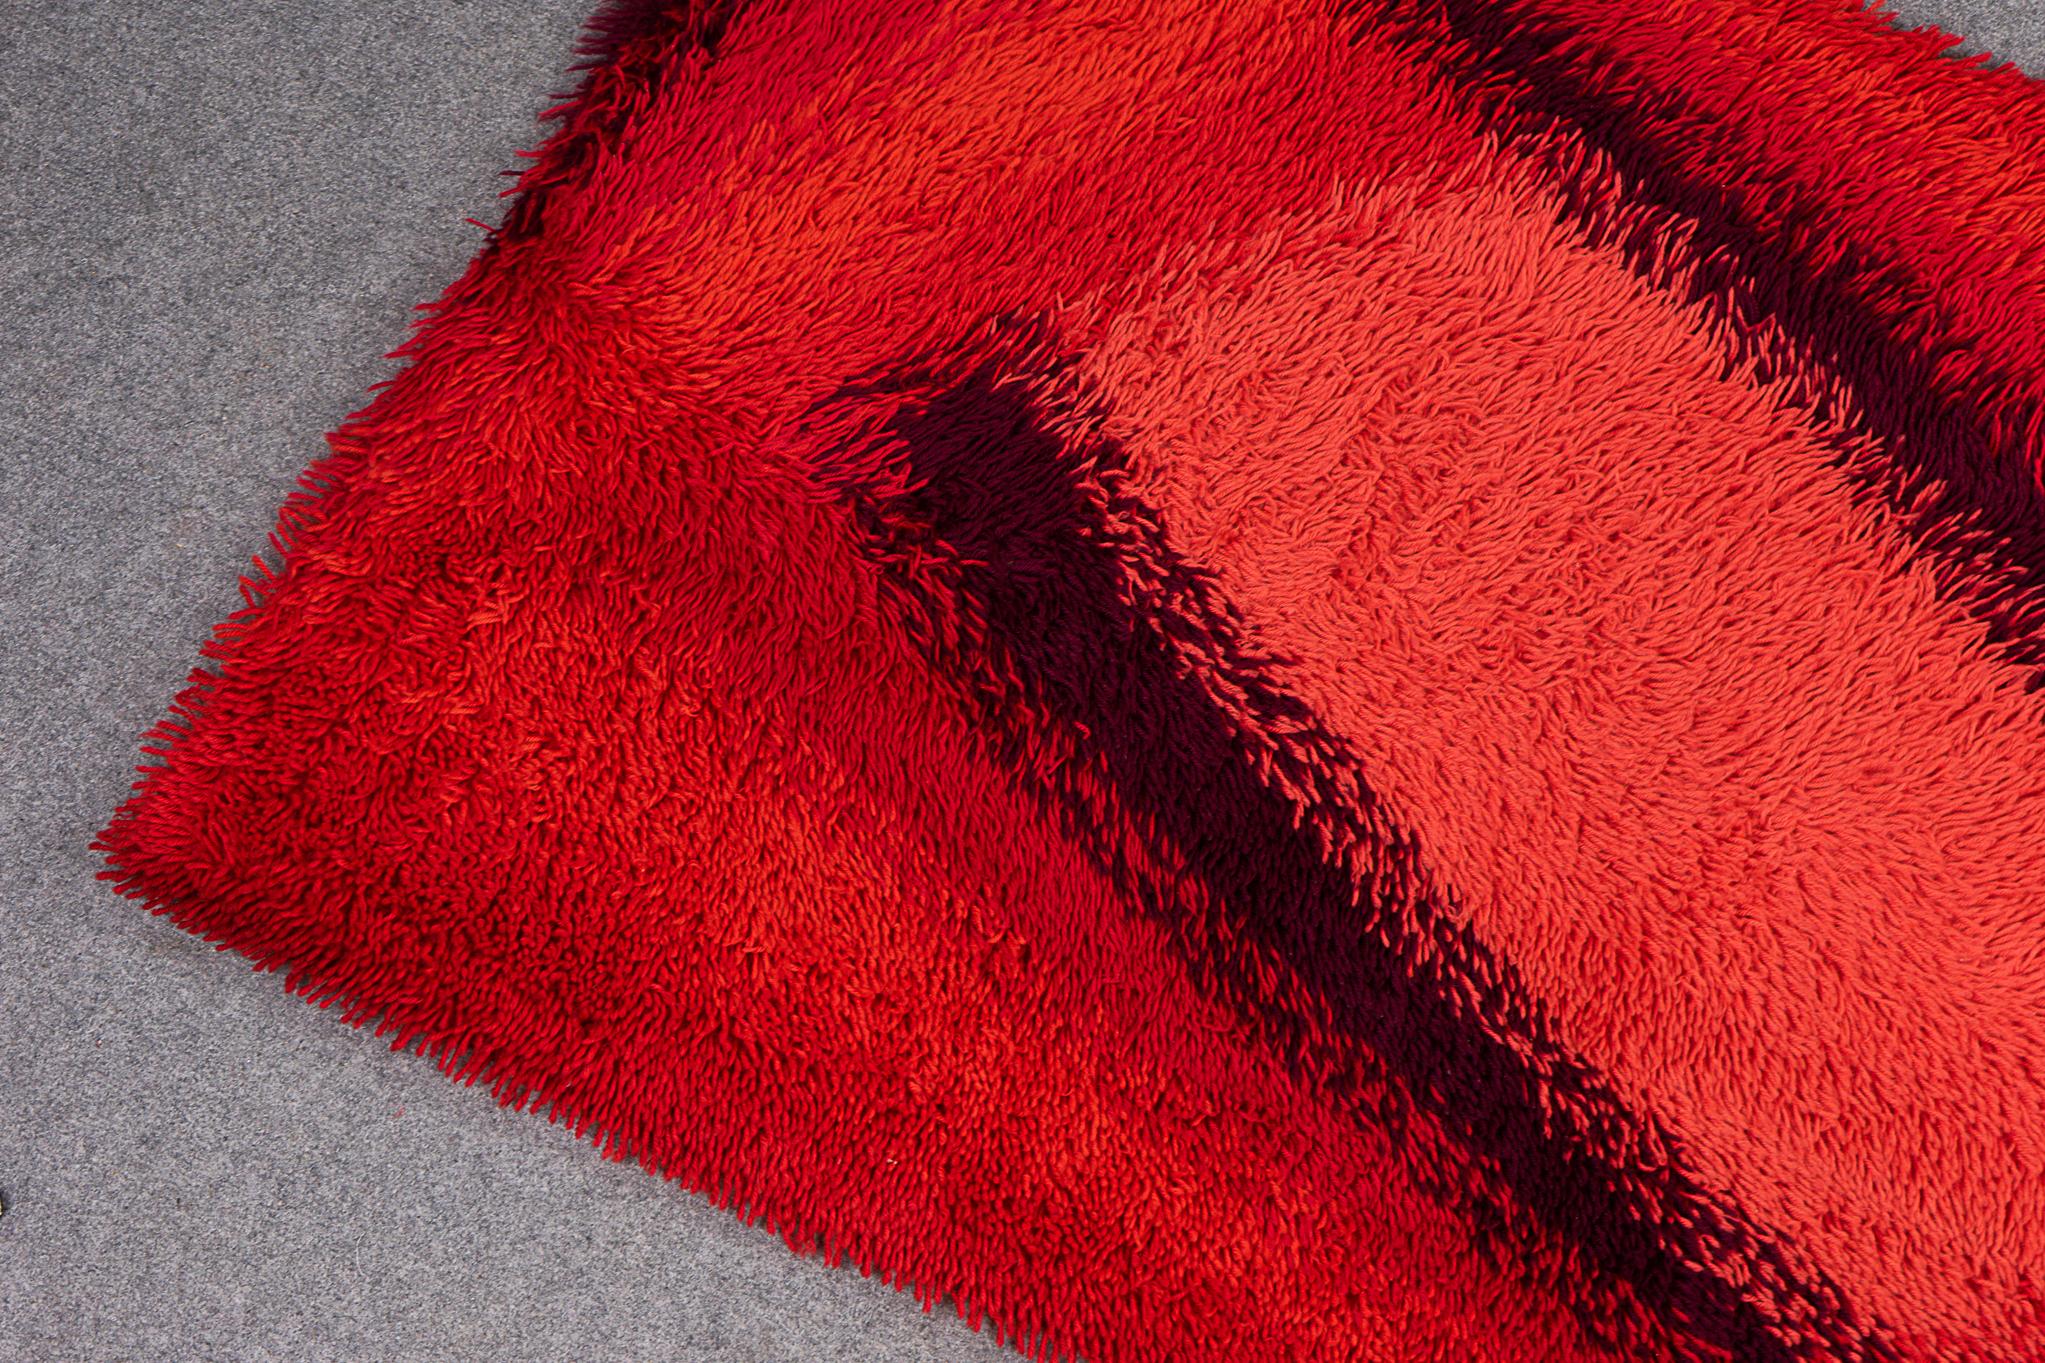 Tapis scandinave en laine pour CIRCA, circa 1960. Conception graphique abstraite dans une palette de couleurs chaudes corail, rouge et marron. Magnifique comme tenture murale ou comme tapis de sol ! Très bel état vintage, usure mineure.

Veuillez